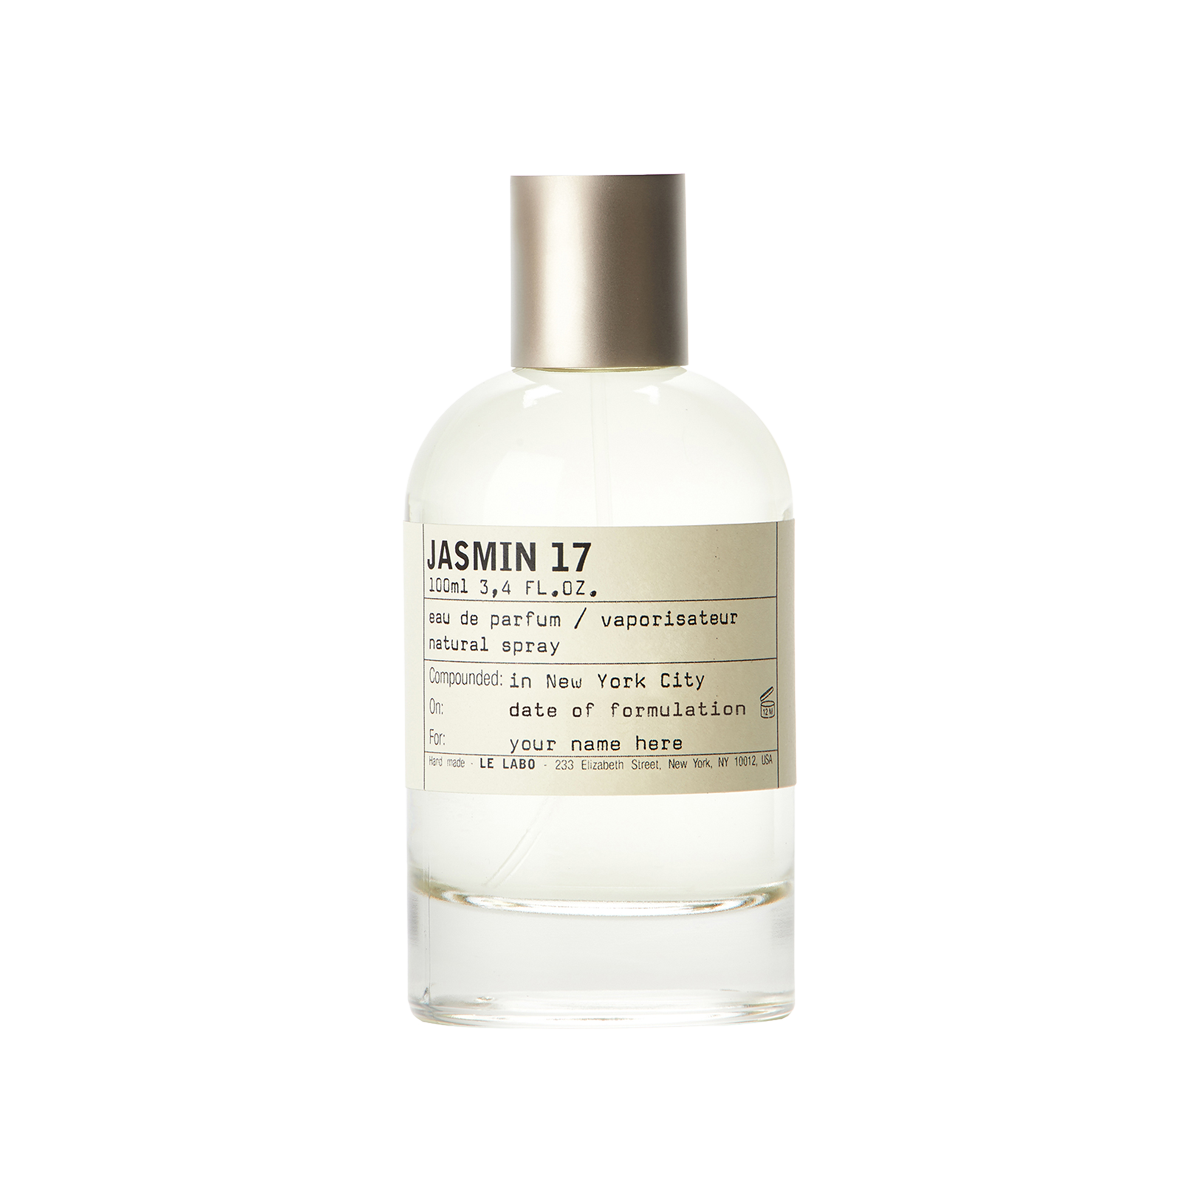 Le Labo fragrances - Jasmin 17 Eau de Parfum